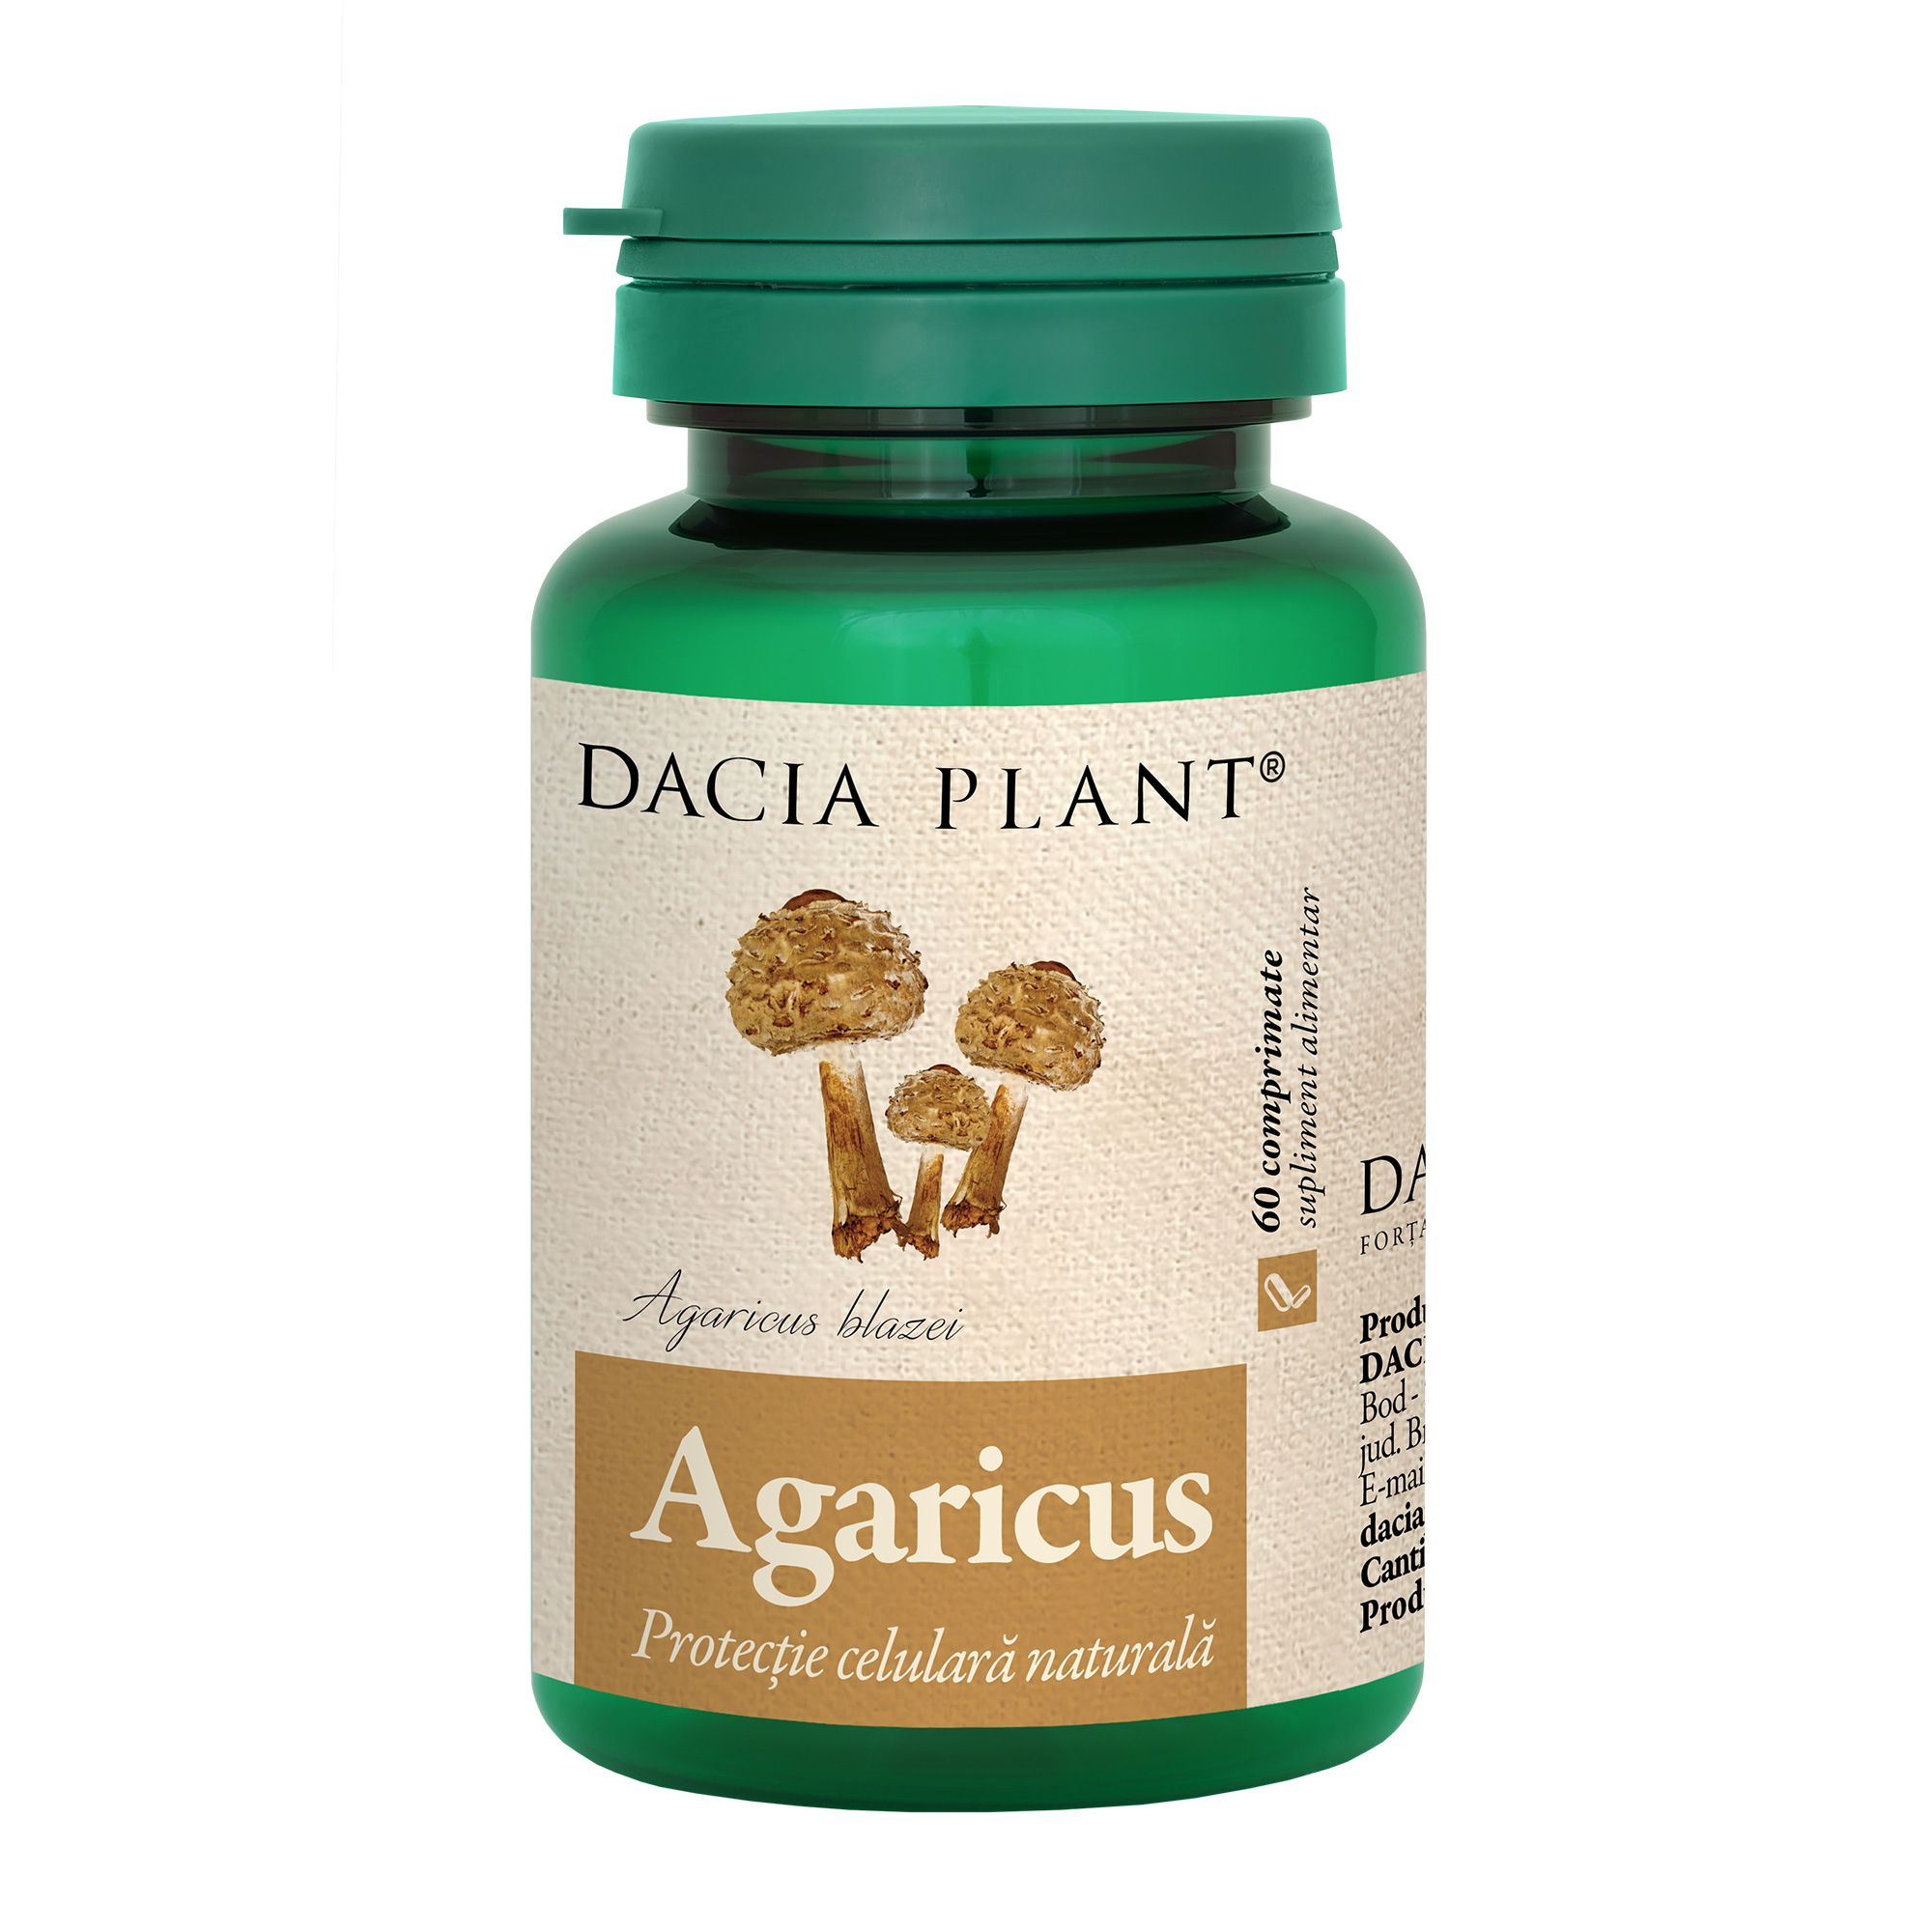 Agaricus comprimate Dacia Plant